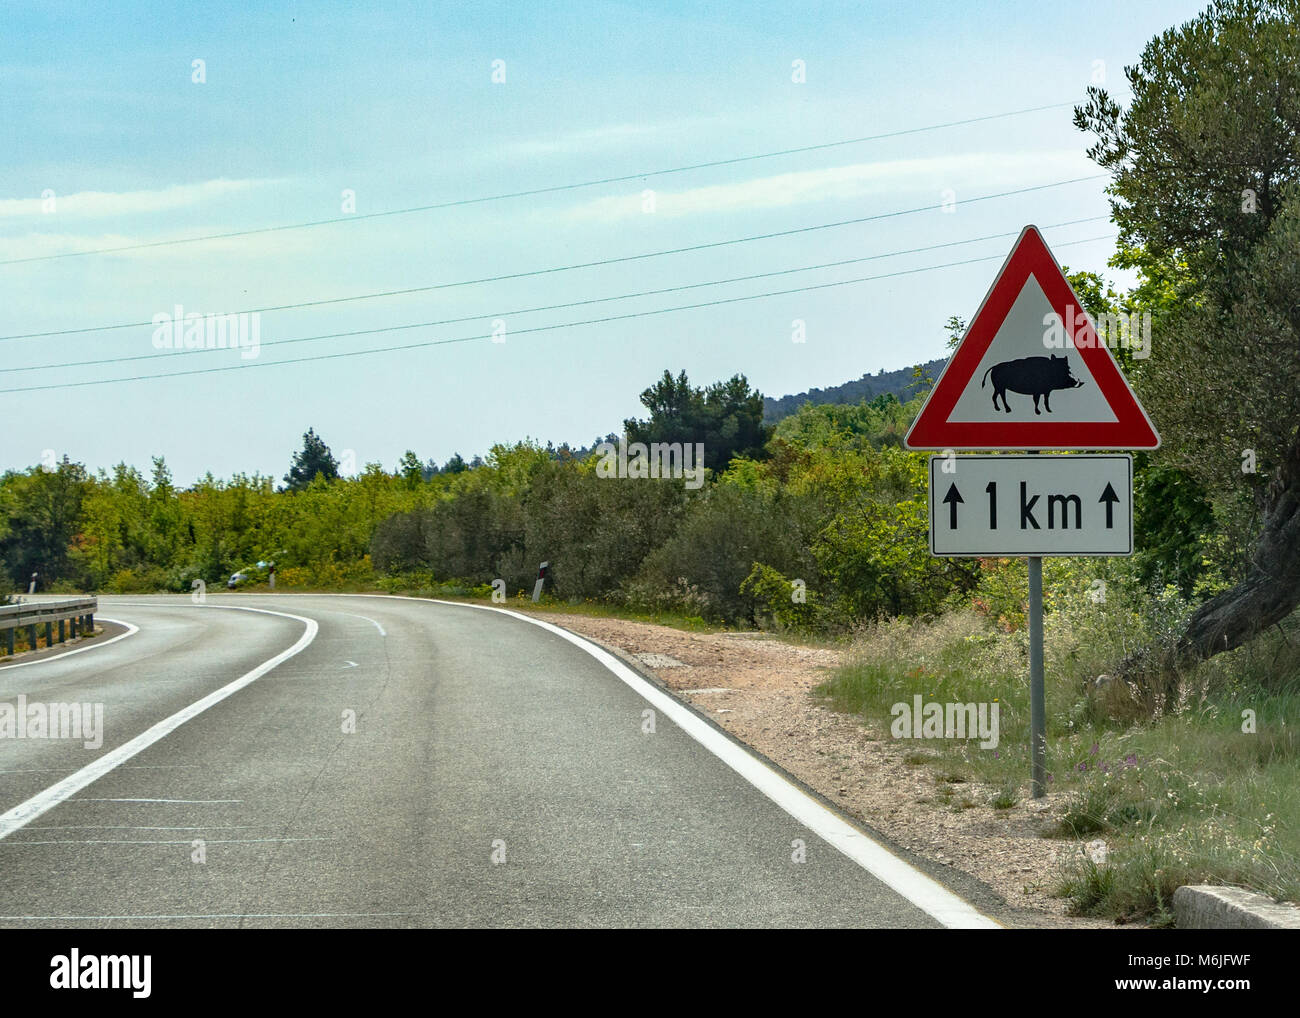 https://c8.alamy.com/comp/M6JFWF/warning-wild-boar-crossing-in-croatia-M6JFWF.jpg